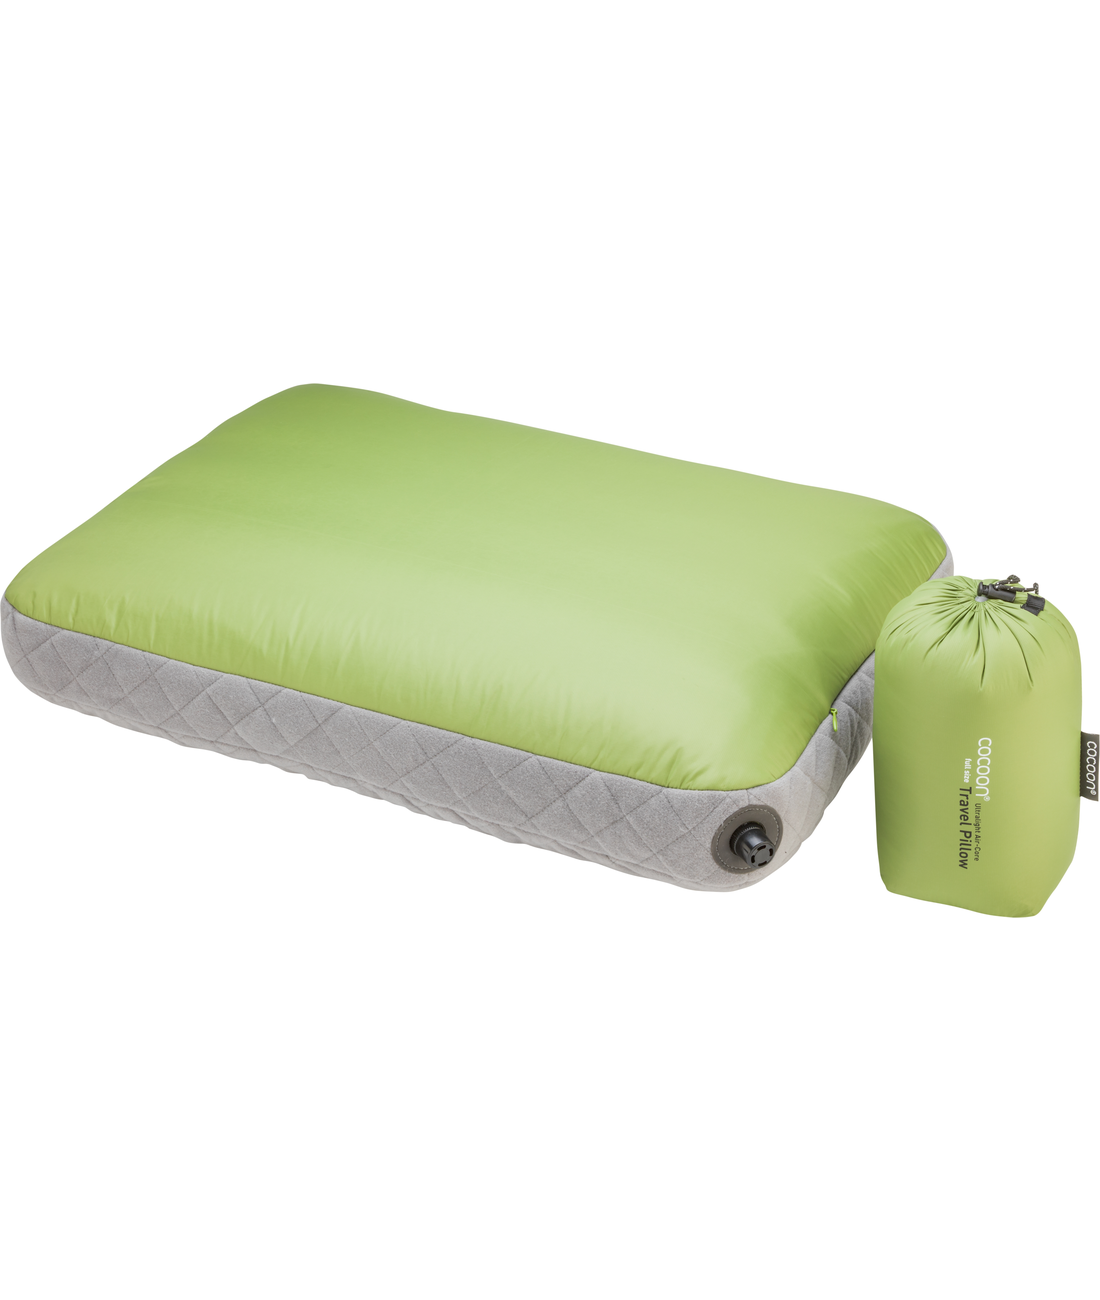 Air-Core Pillow ACP5-UL1Q